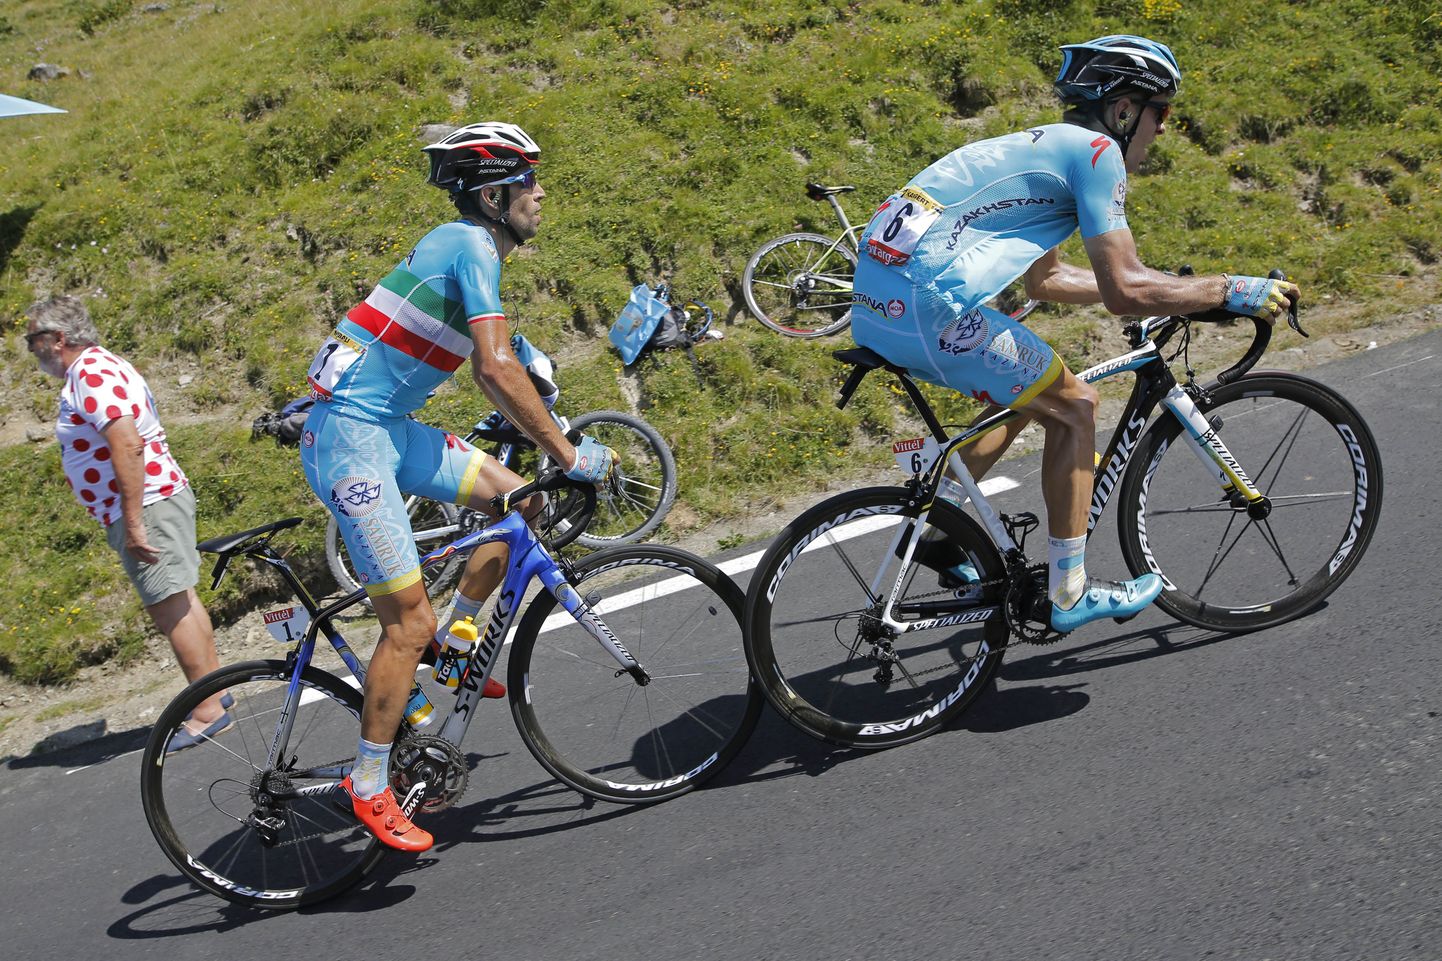 Astana meeskonna endine liider itaallane Vincenzo Nibali väntamas tunamulluse Tour de France'i 11. etapil Tanel Kangerti sabas järsust mäest üles.